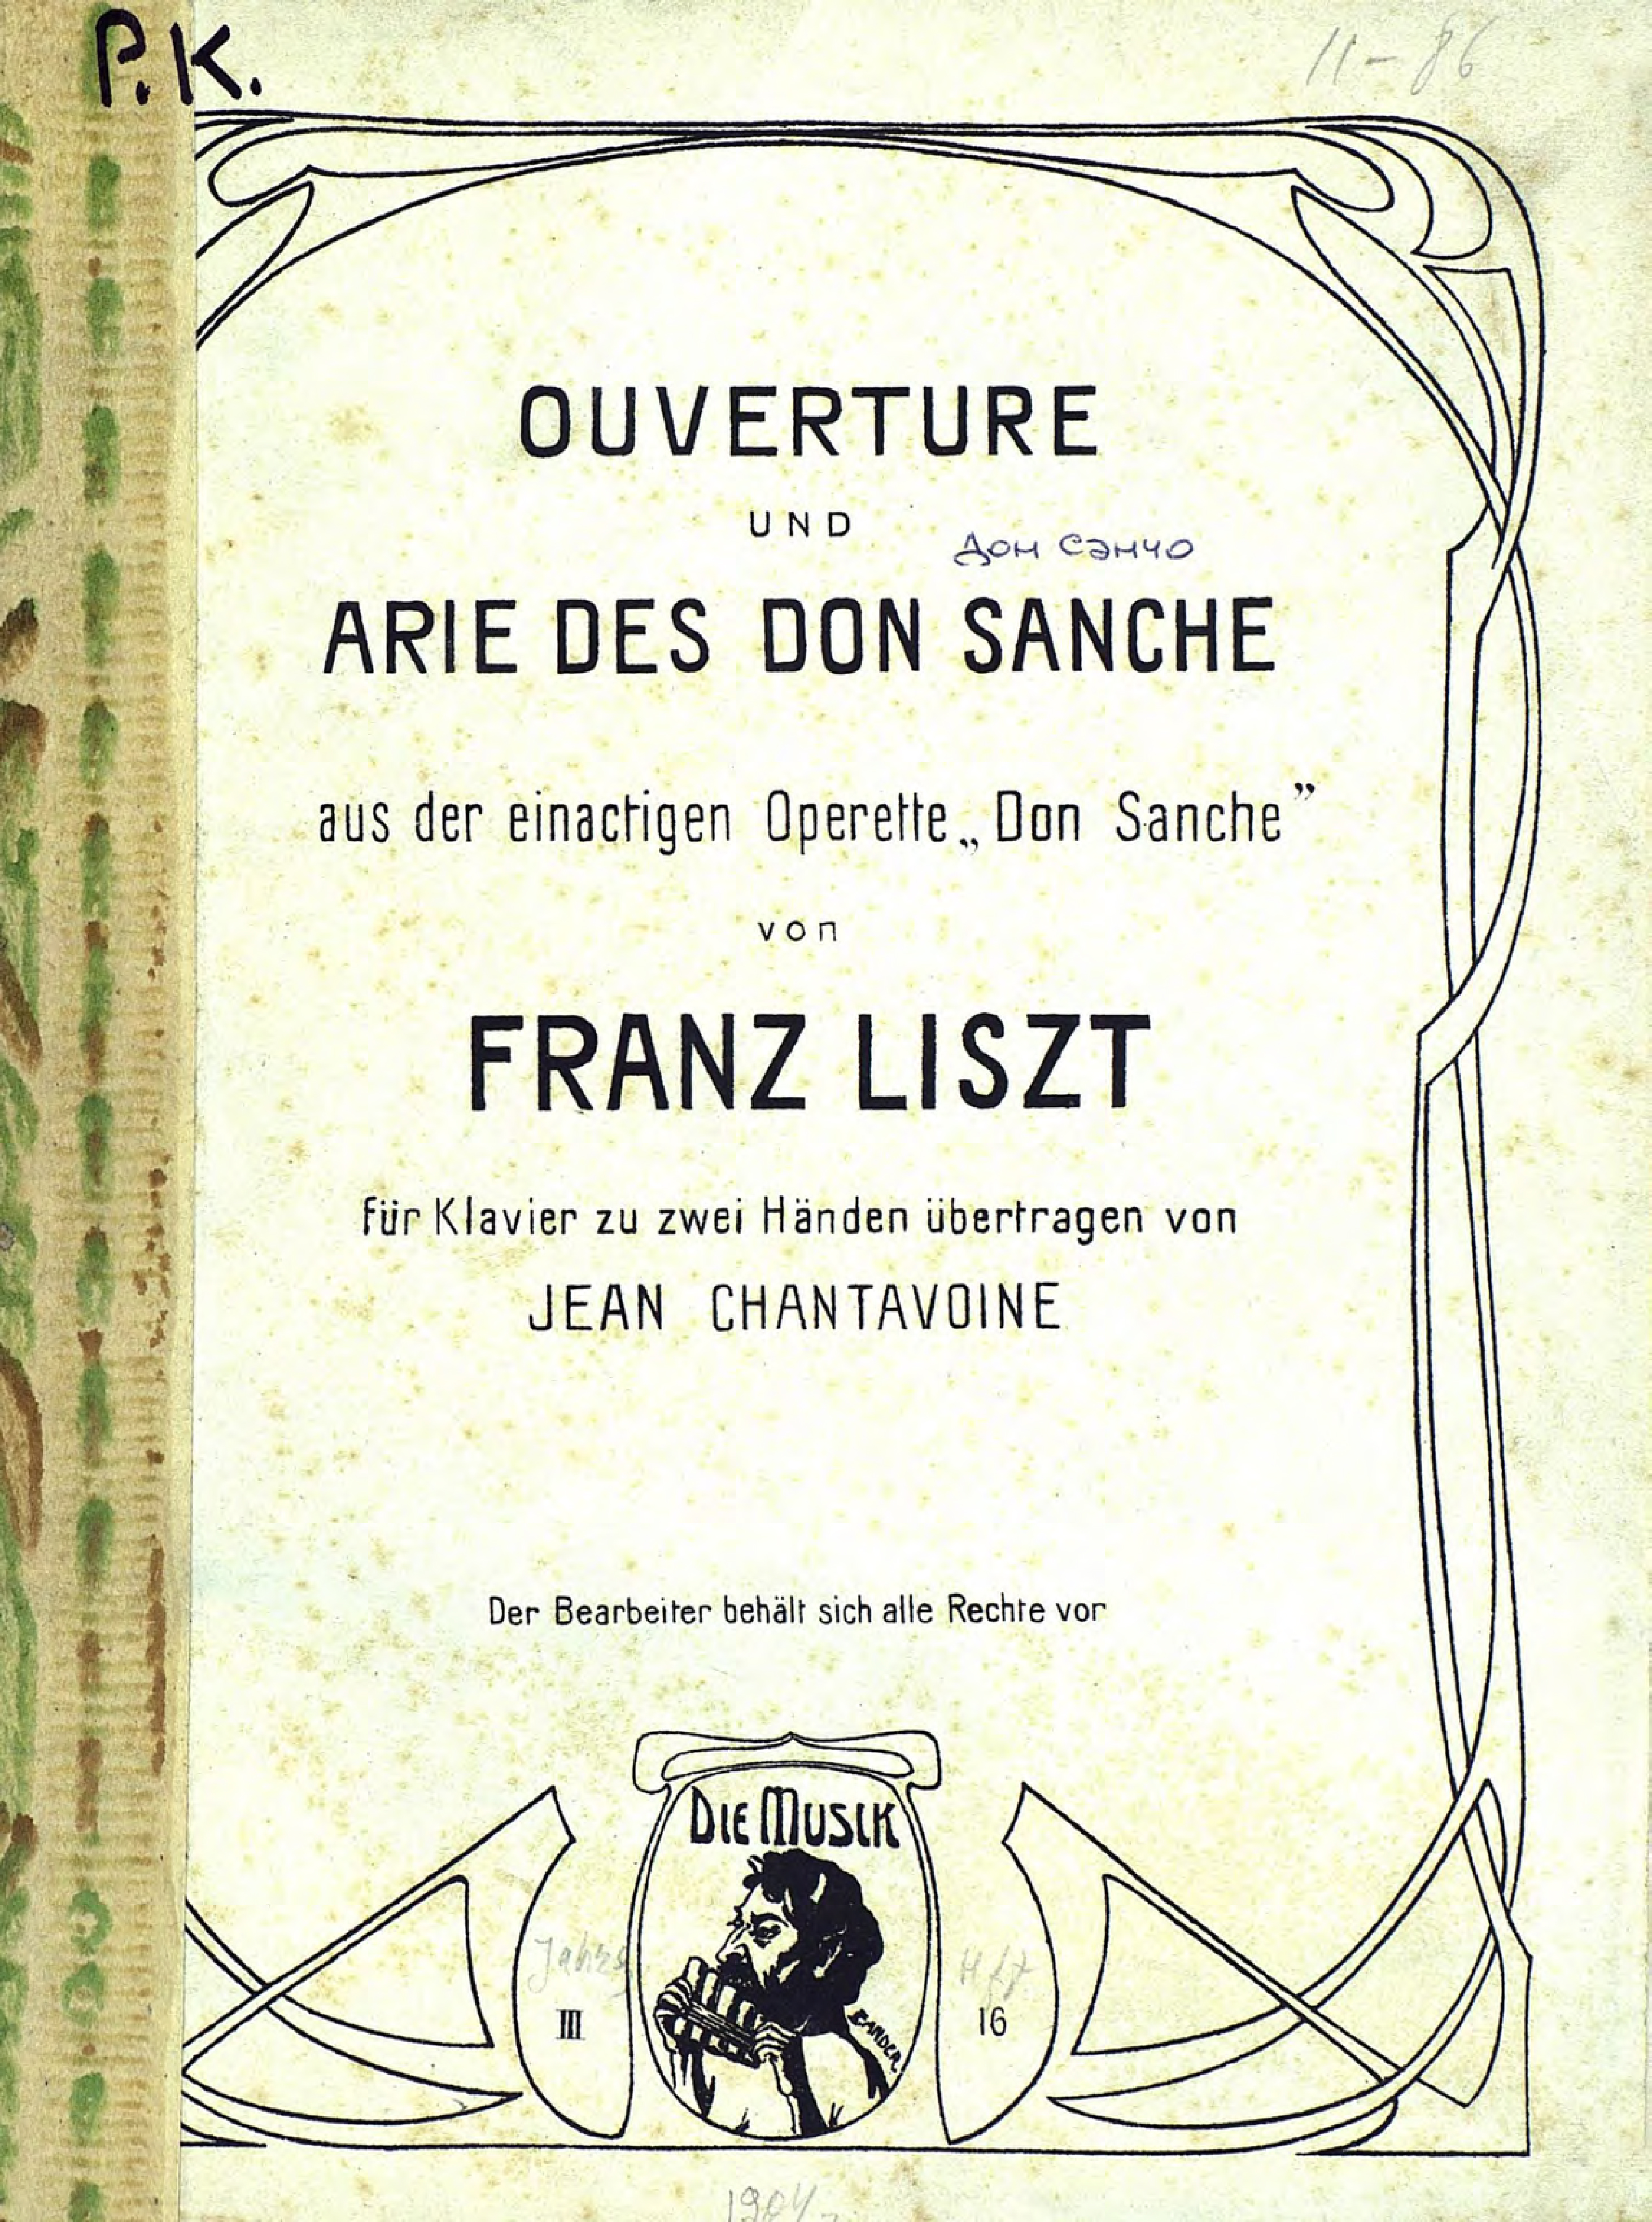 Ouverture und Arie des don Sanche aus der einactigen Operette"Don Sanche"von F. Liszt